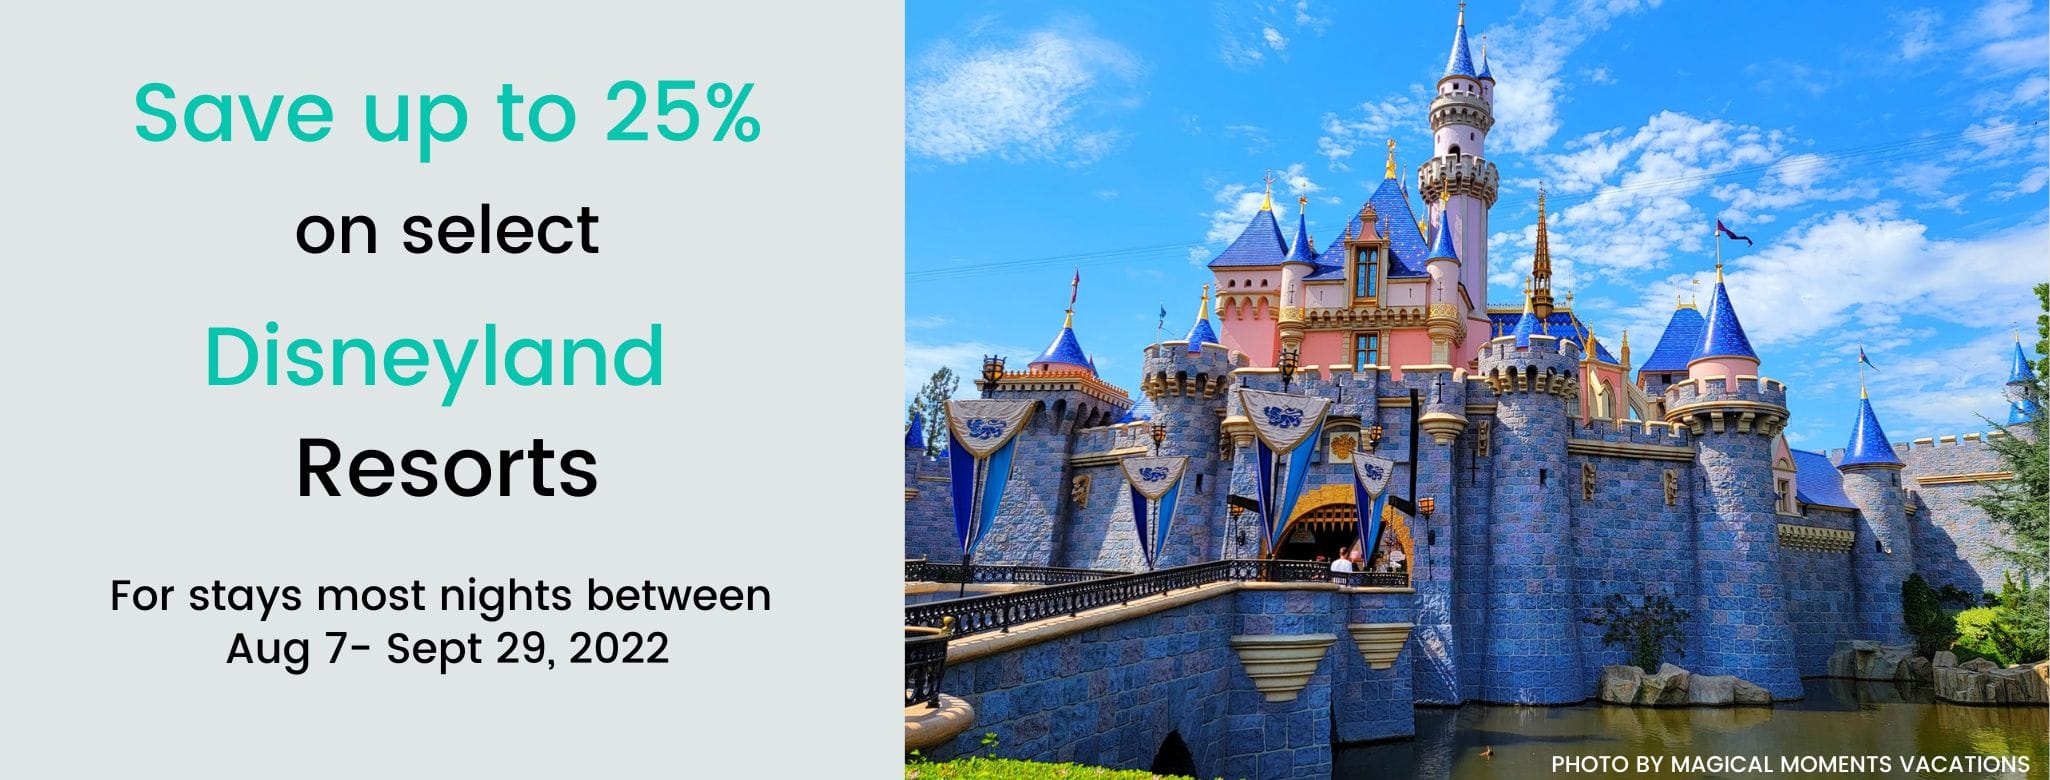 Save up to 25% at Disneyland through June 2022